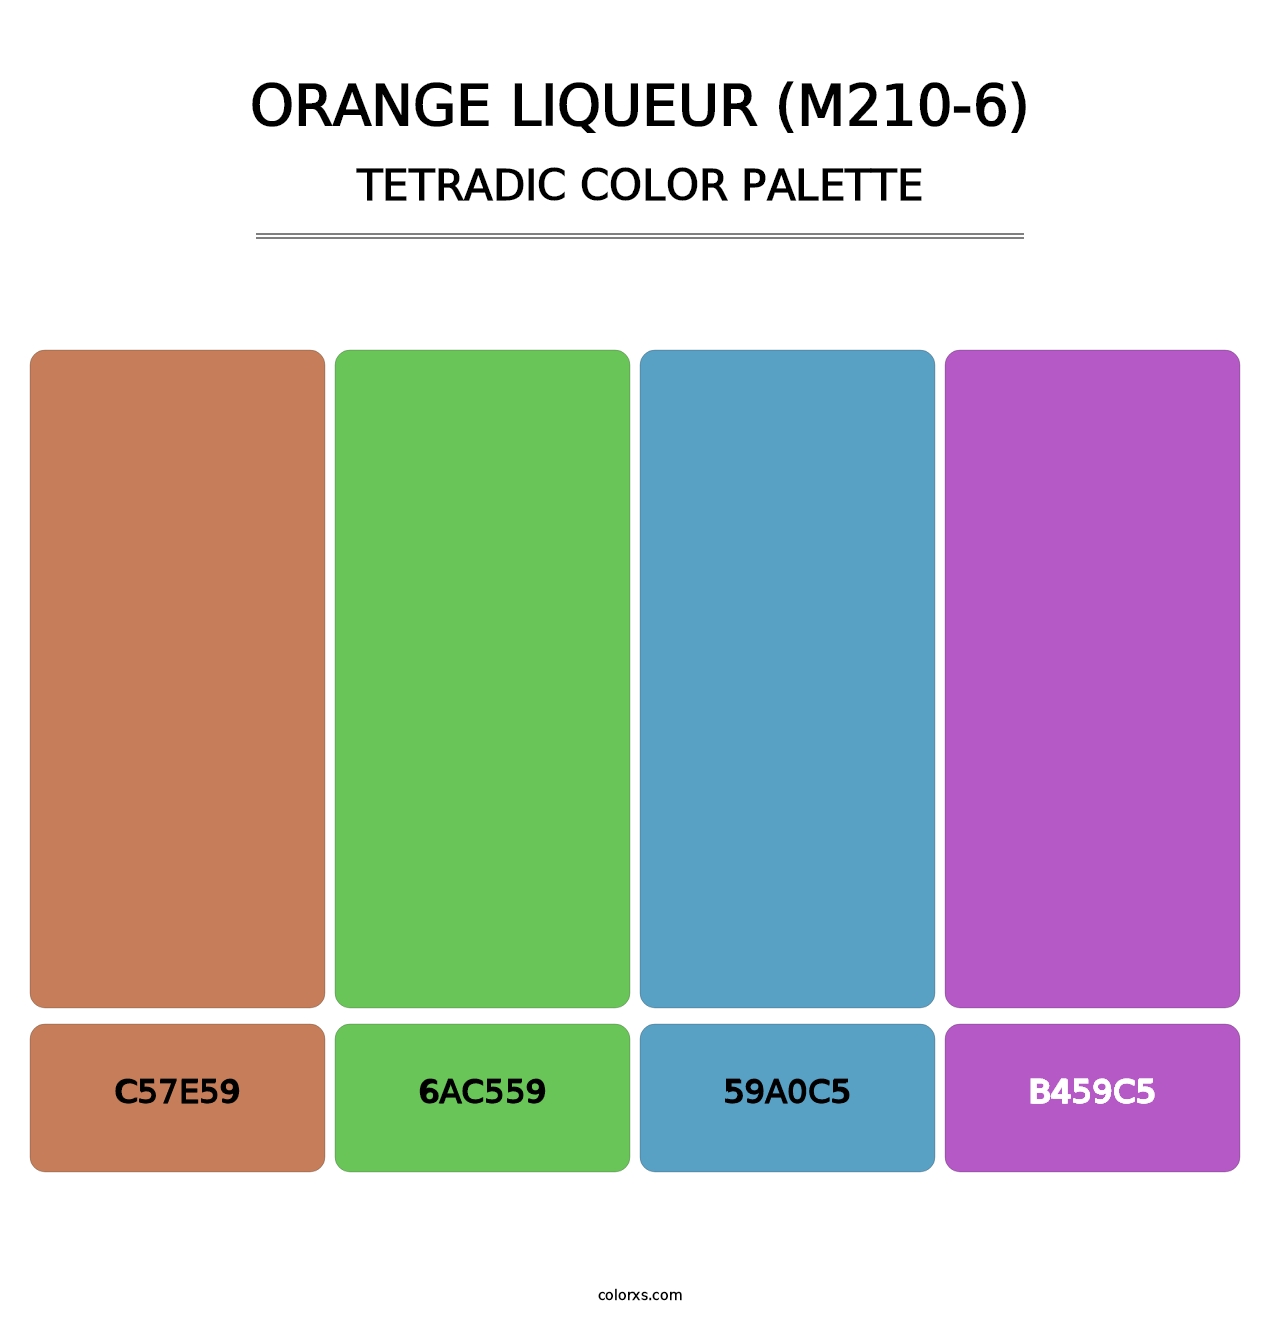 Orange Liqueur (M210-6) - Tetradic Color Palette